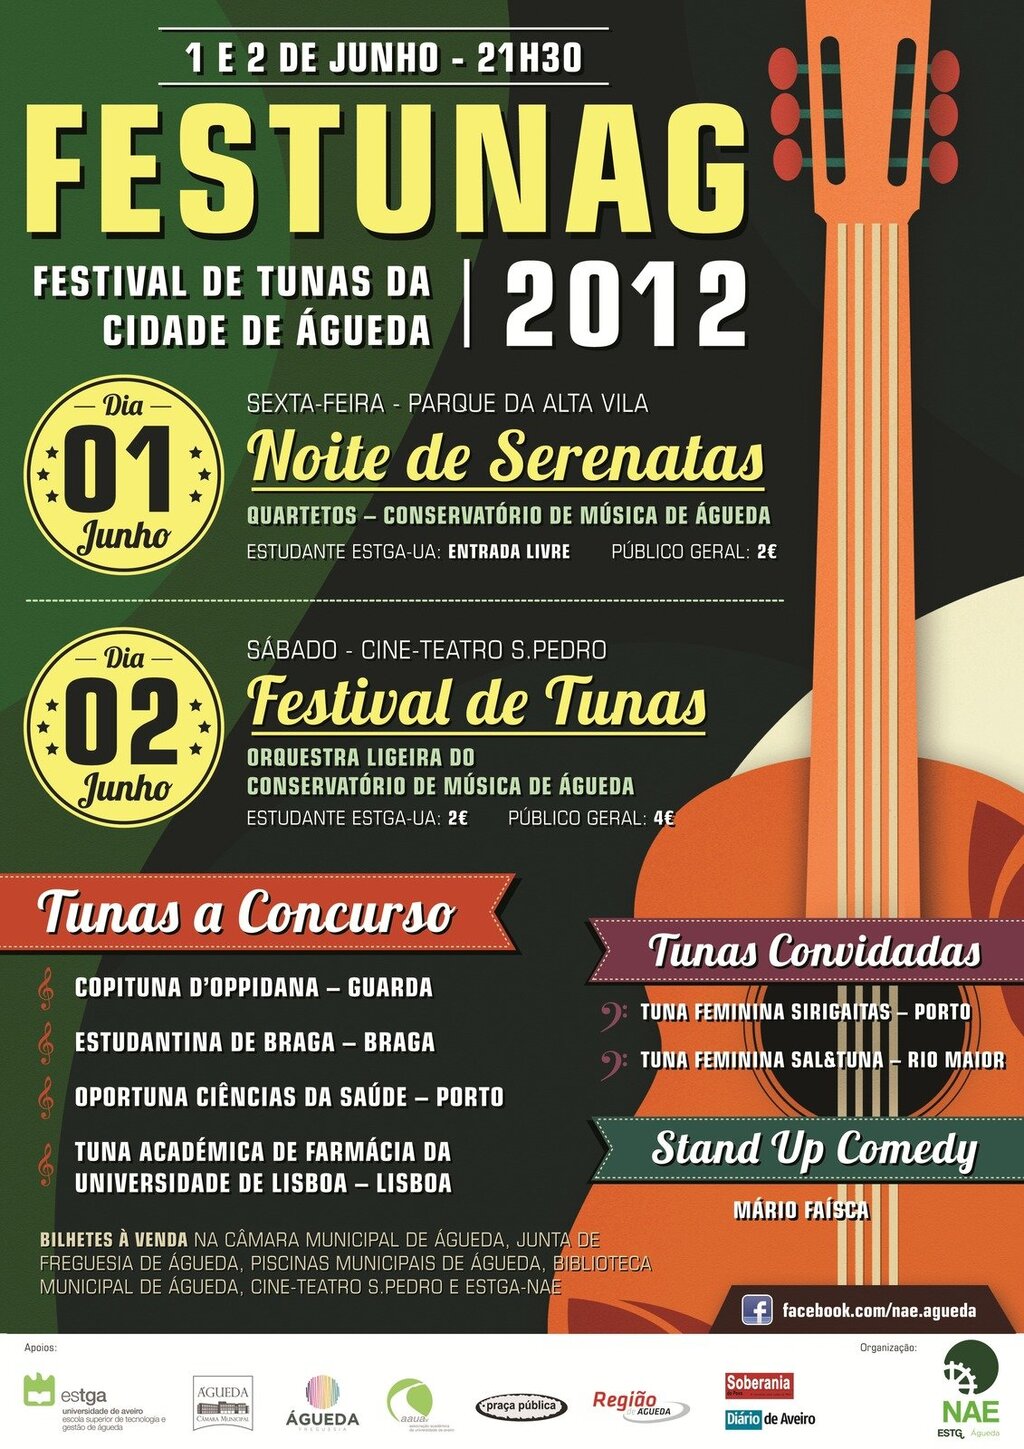 FESTUNAG 2012 - Festival de Tunas da Cidade de Águeda [Org.: NAE-ESTGA]